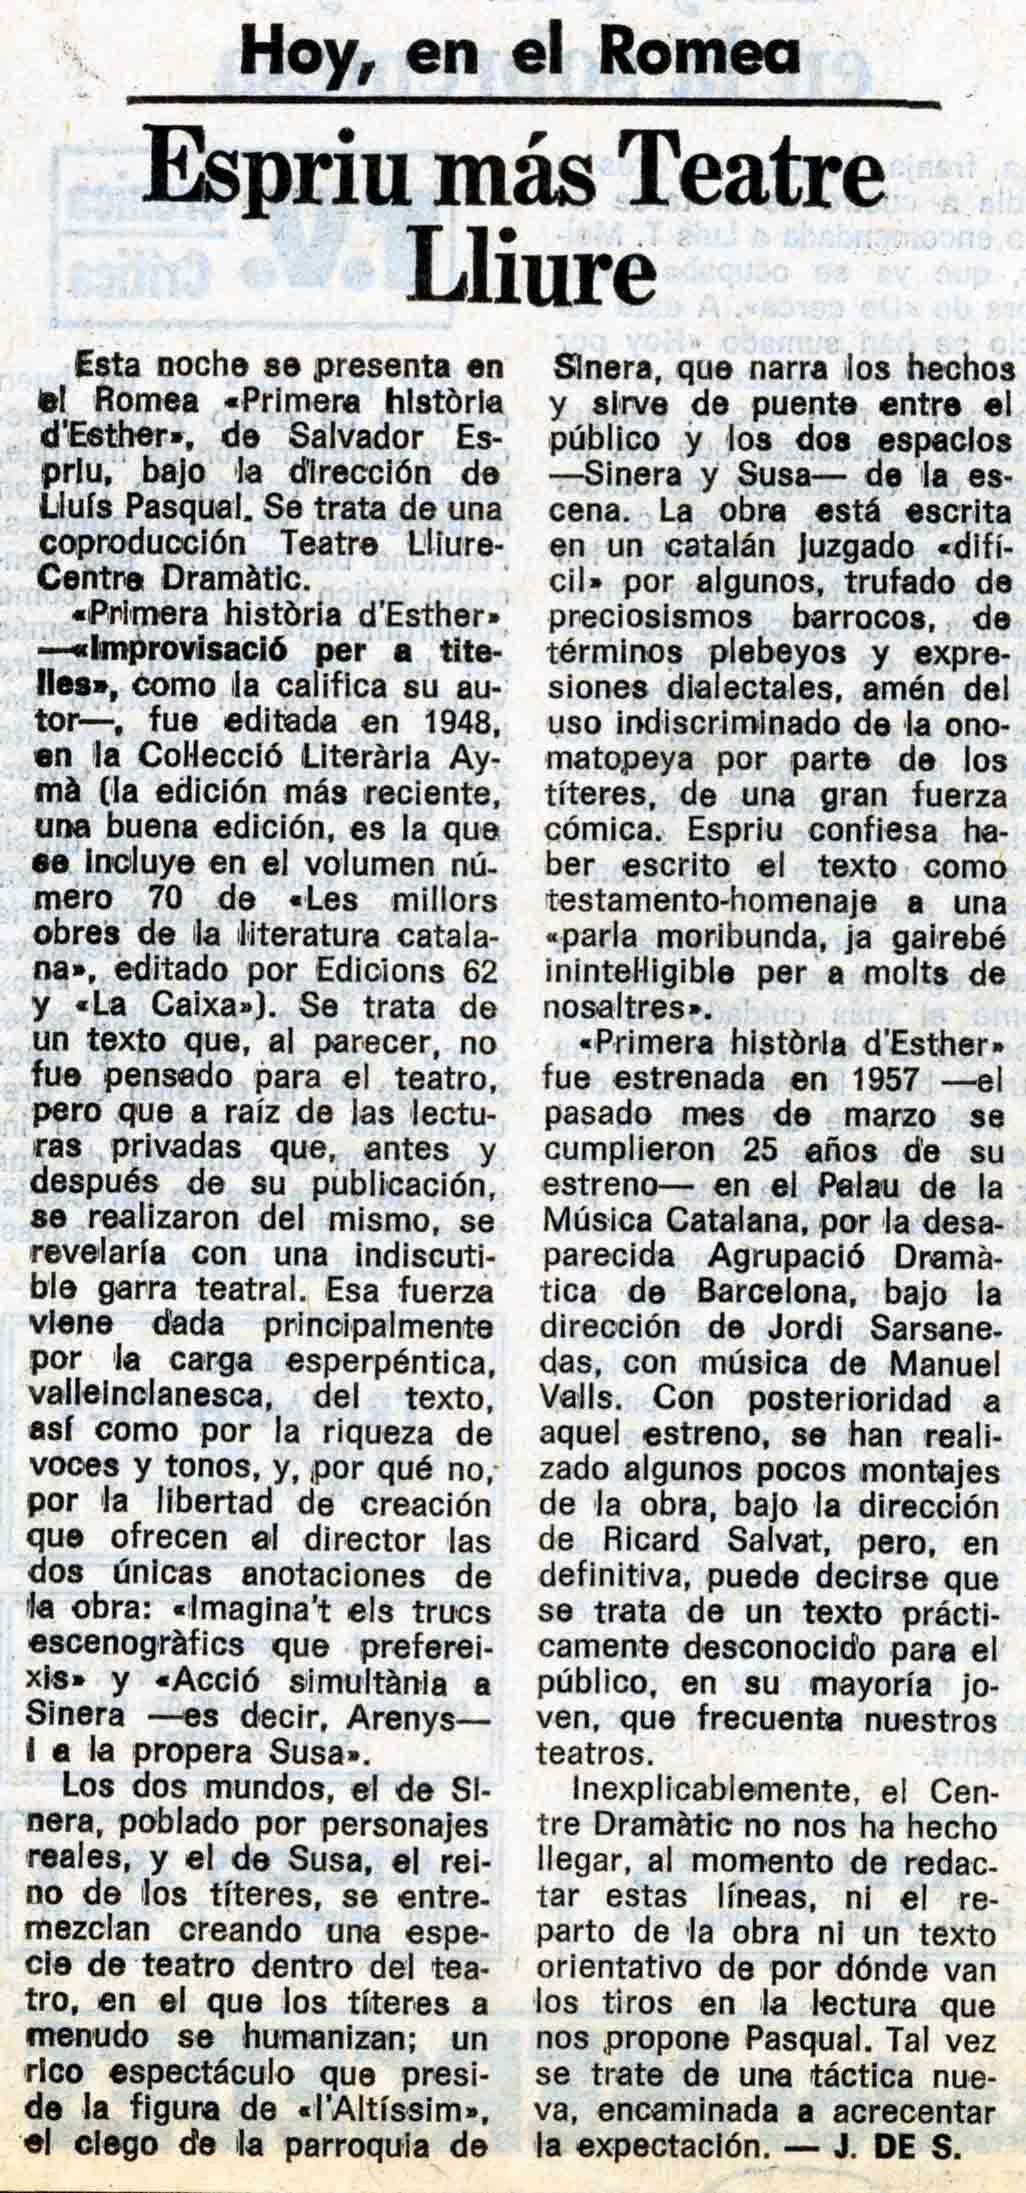 J. de S. Espriu más Teatre Lliure. La Vanguardia, 27/05/1982. Pàg. 64